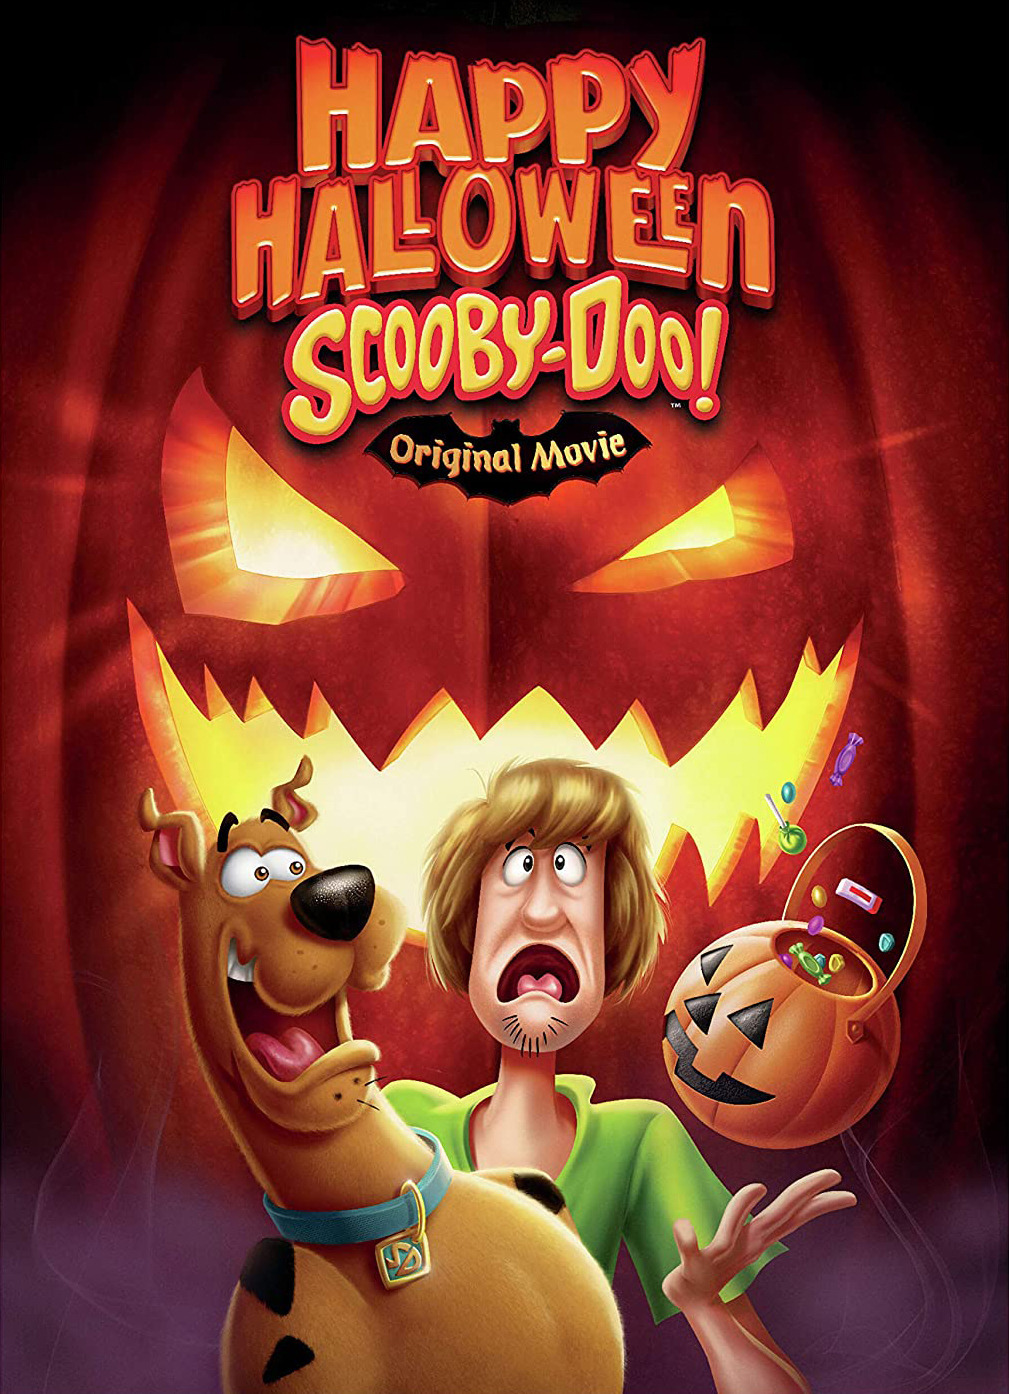 New Release Review: Happy Halloween, Scooby-Doo! - Broke Horror Fan